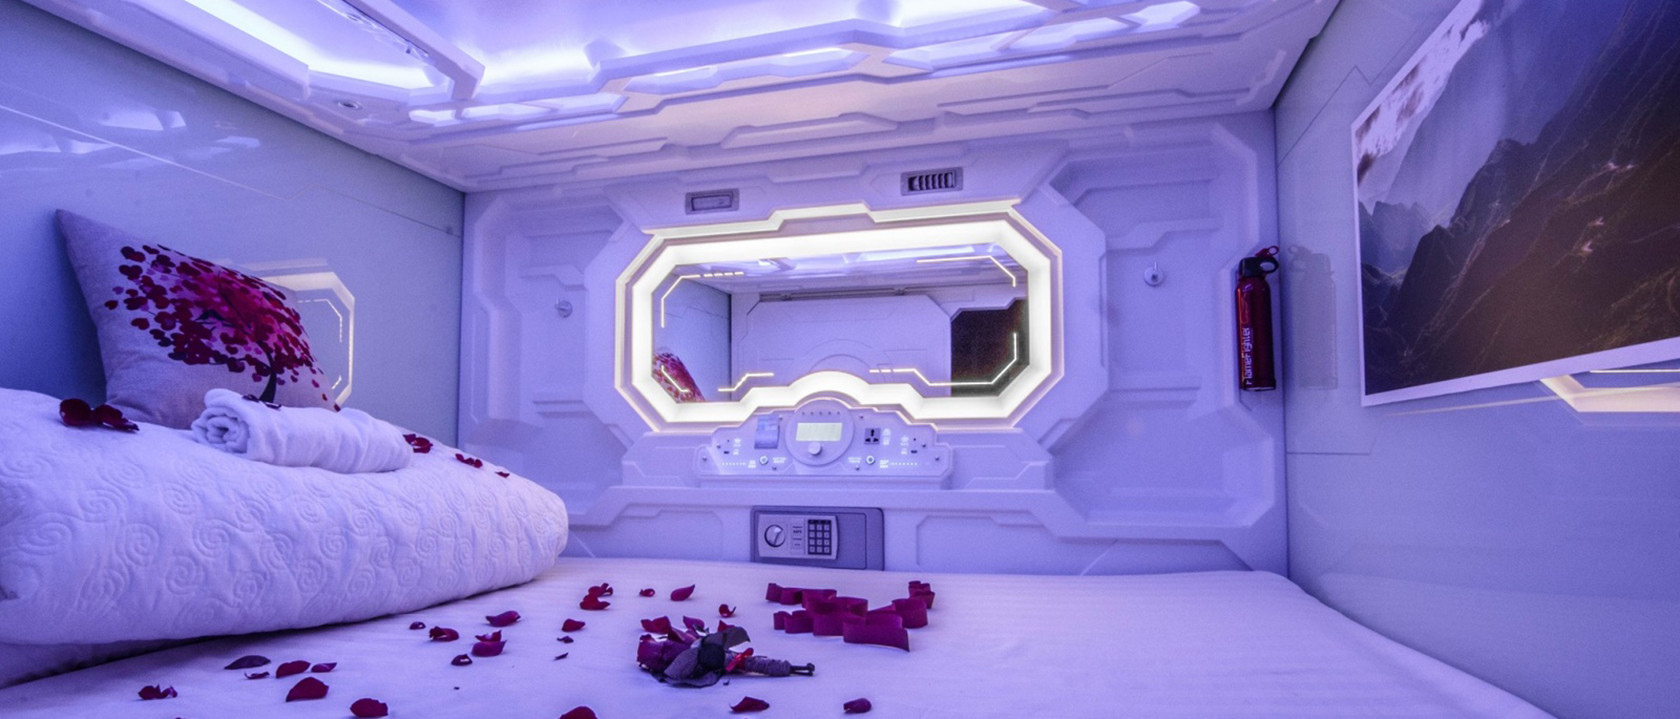 چین بهترین تخت کپسول فضایی برای فروش